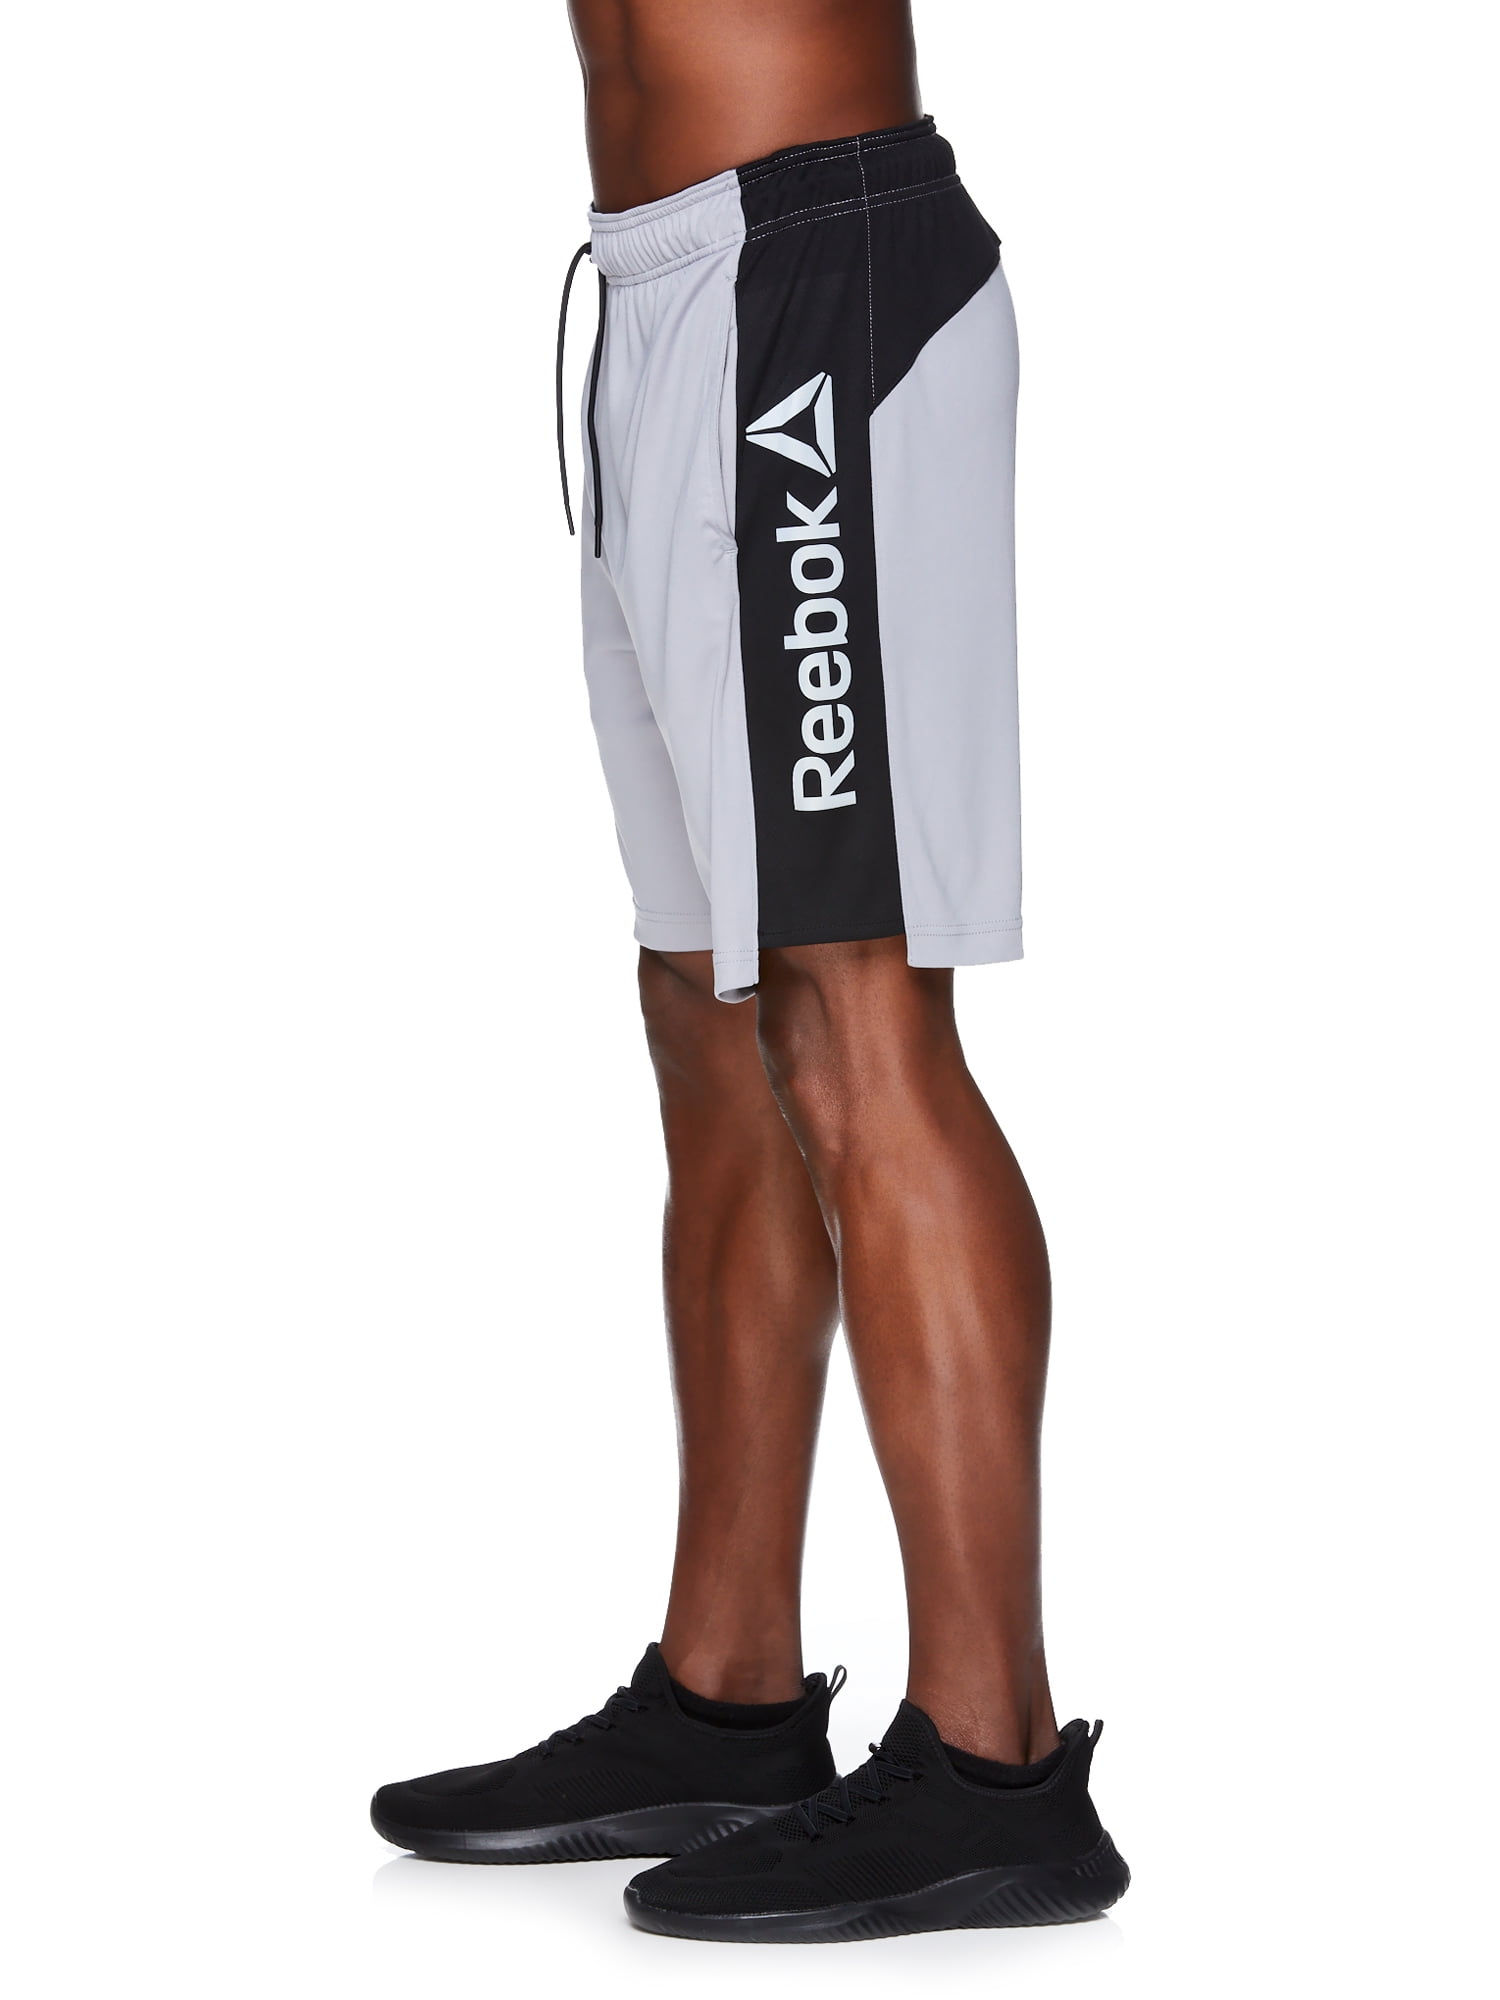 Reebok and Big Men's Amped Shorts - Walmart.com